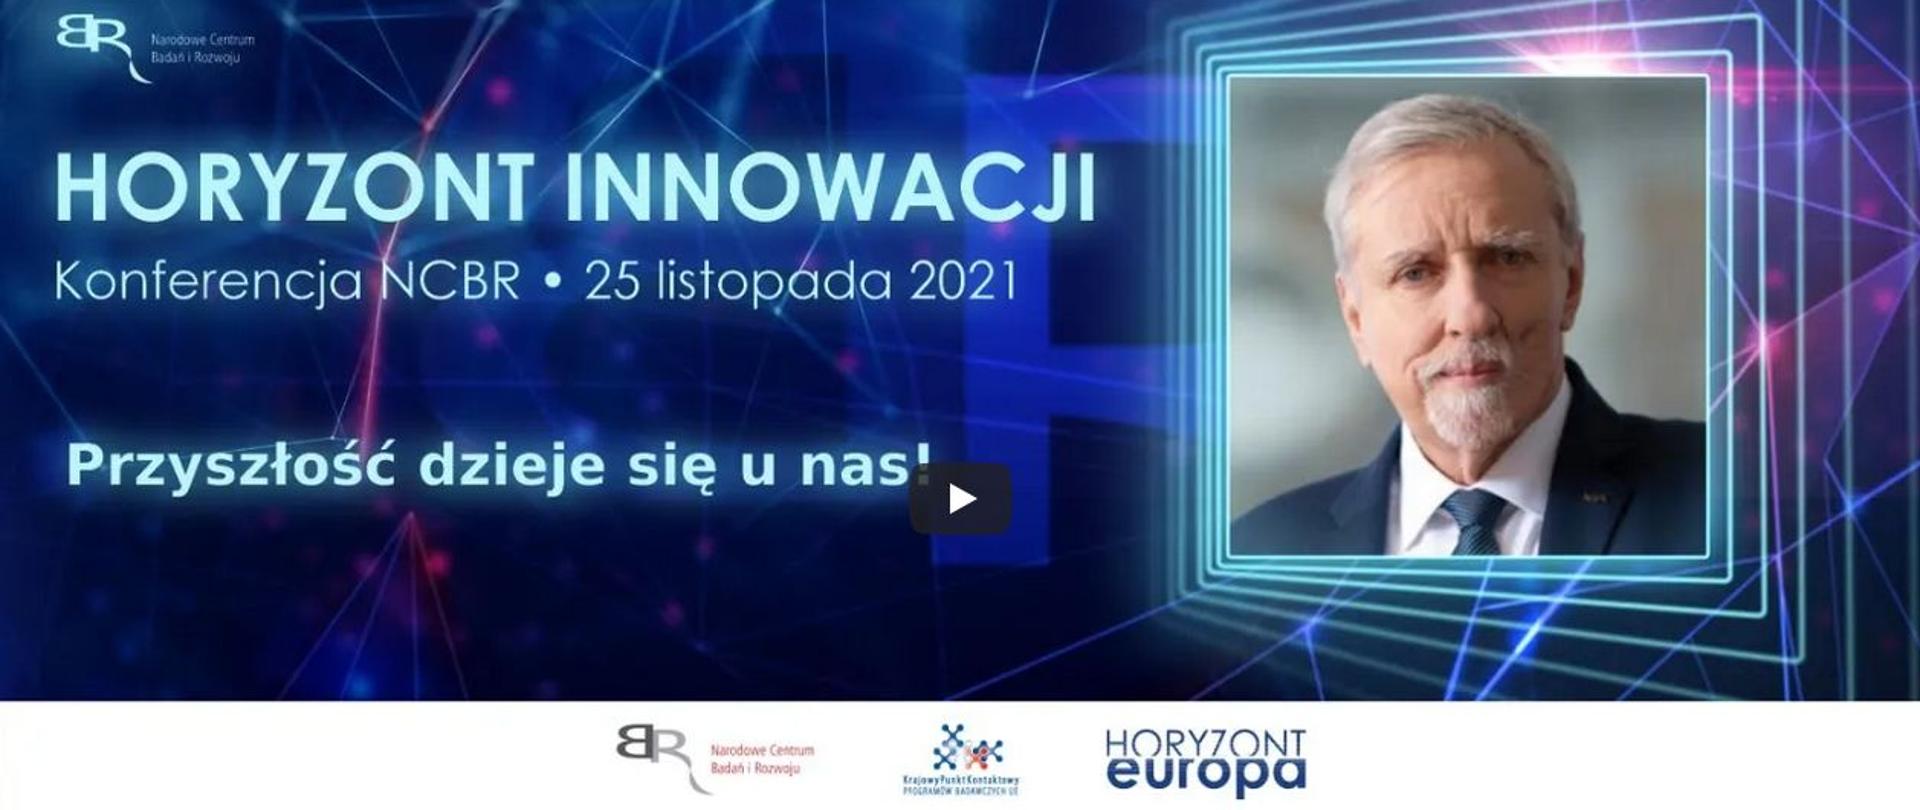 Dr inż. Wojciech Kamieniecki, dyrektor Narodowego Centrum Badań i Rozwoju, zaprasza na konferencję NCBR „Horyzont Innowacji”